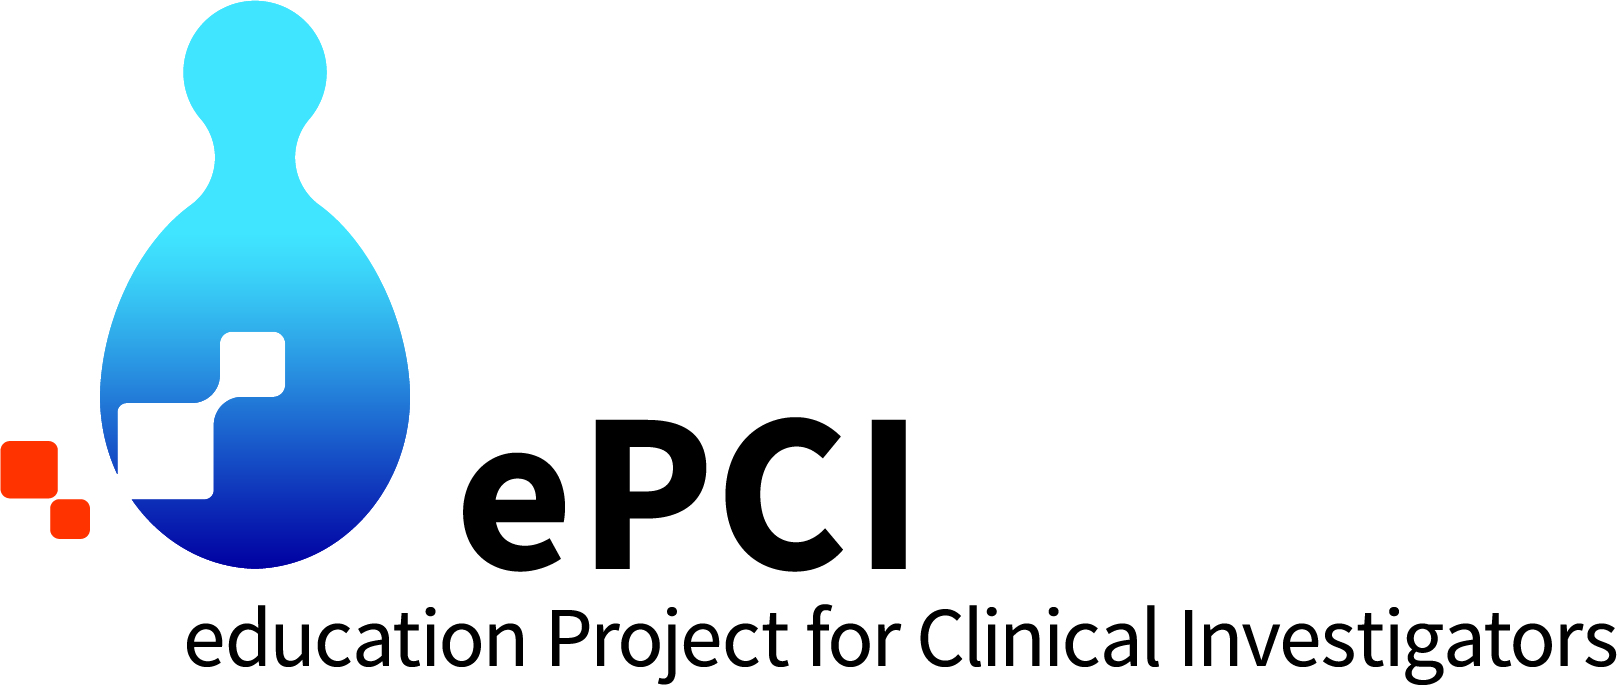 昭和大学医療人のための 臨床研究 教育・支援プロジェクト